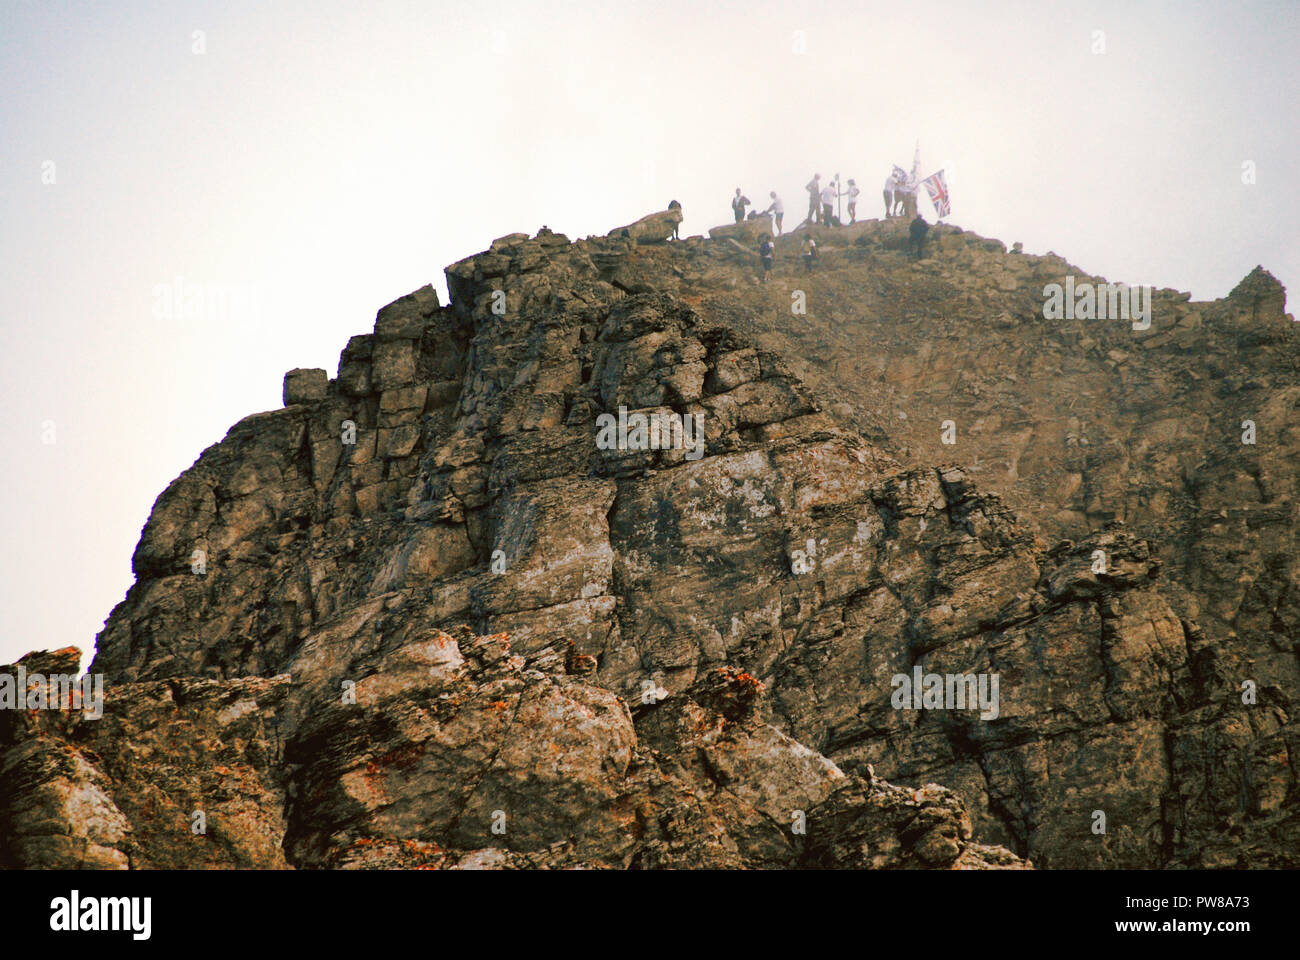 Griechenland, Olympus Berg, Gipfel Mytikas (2,917 m), der höchste Gipfel  des Olymp, voller Kletterer Berg, von der Skala Gipfel, Teil der Art und  Weise Stockfotografie - Alamy